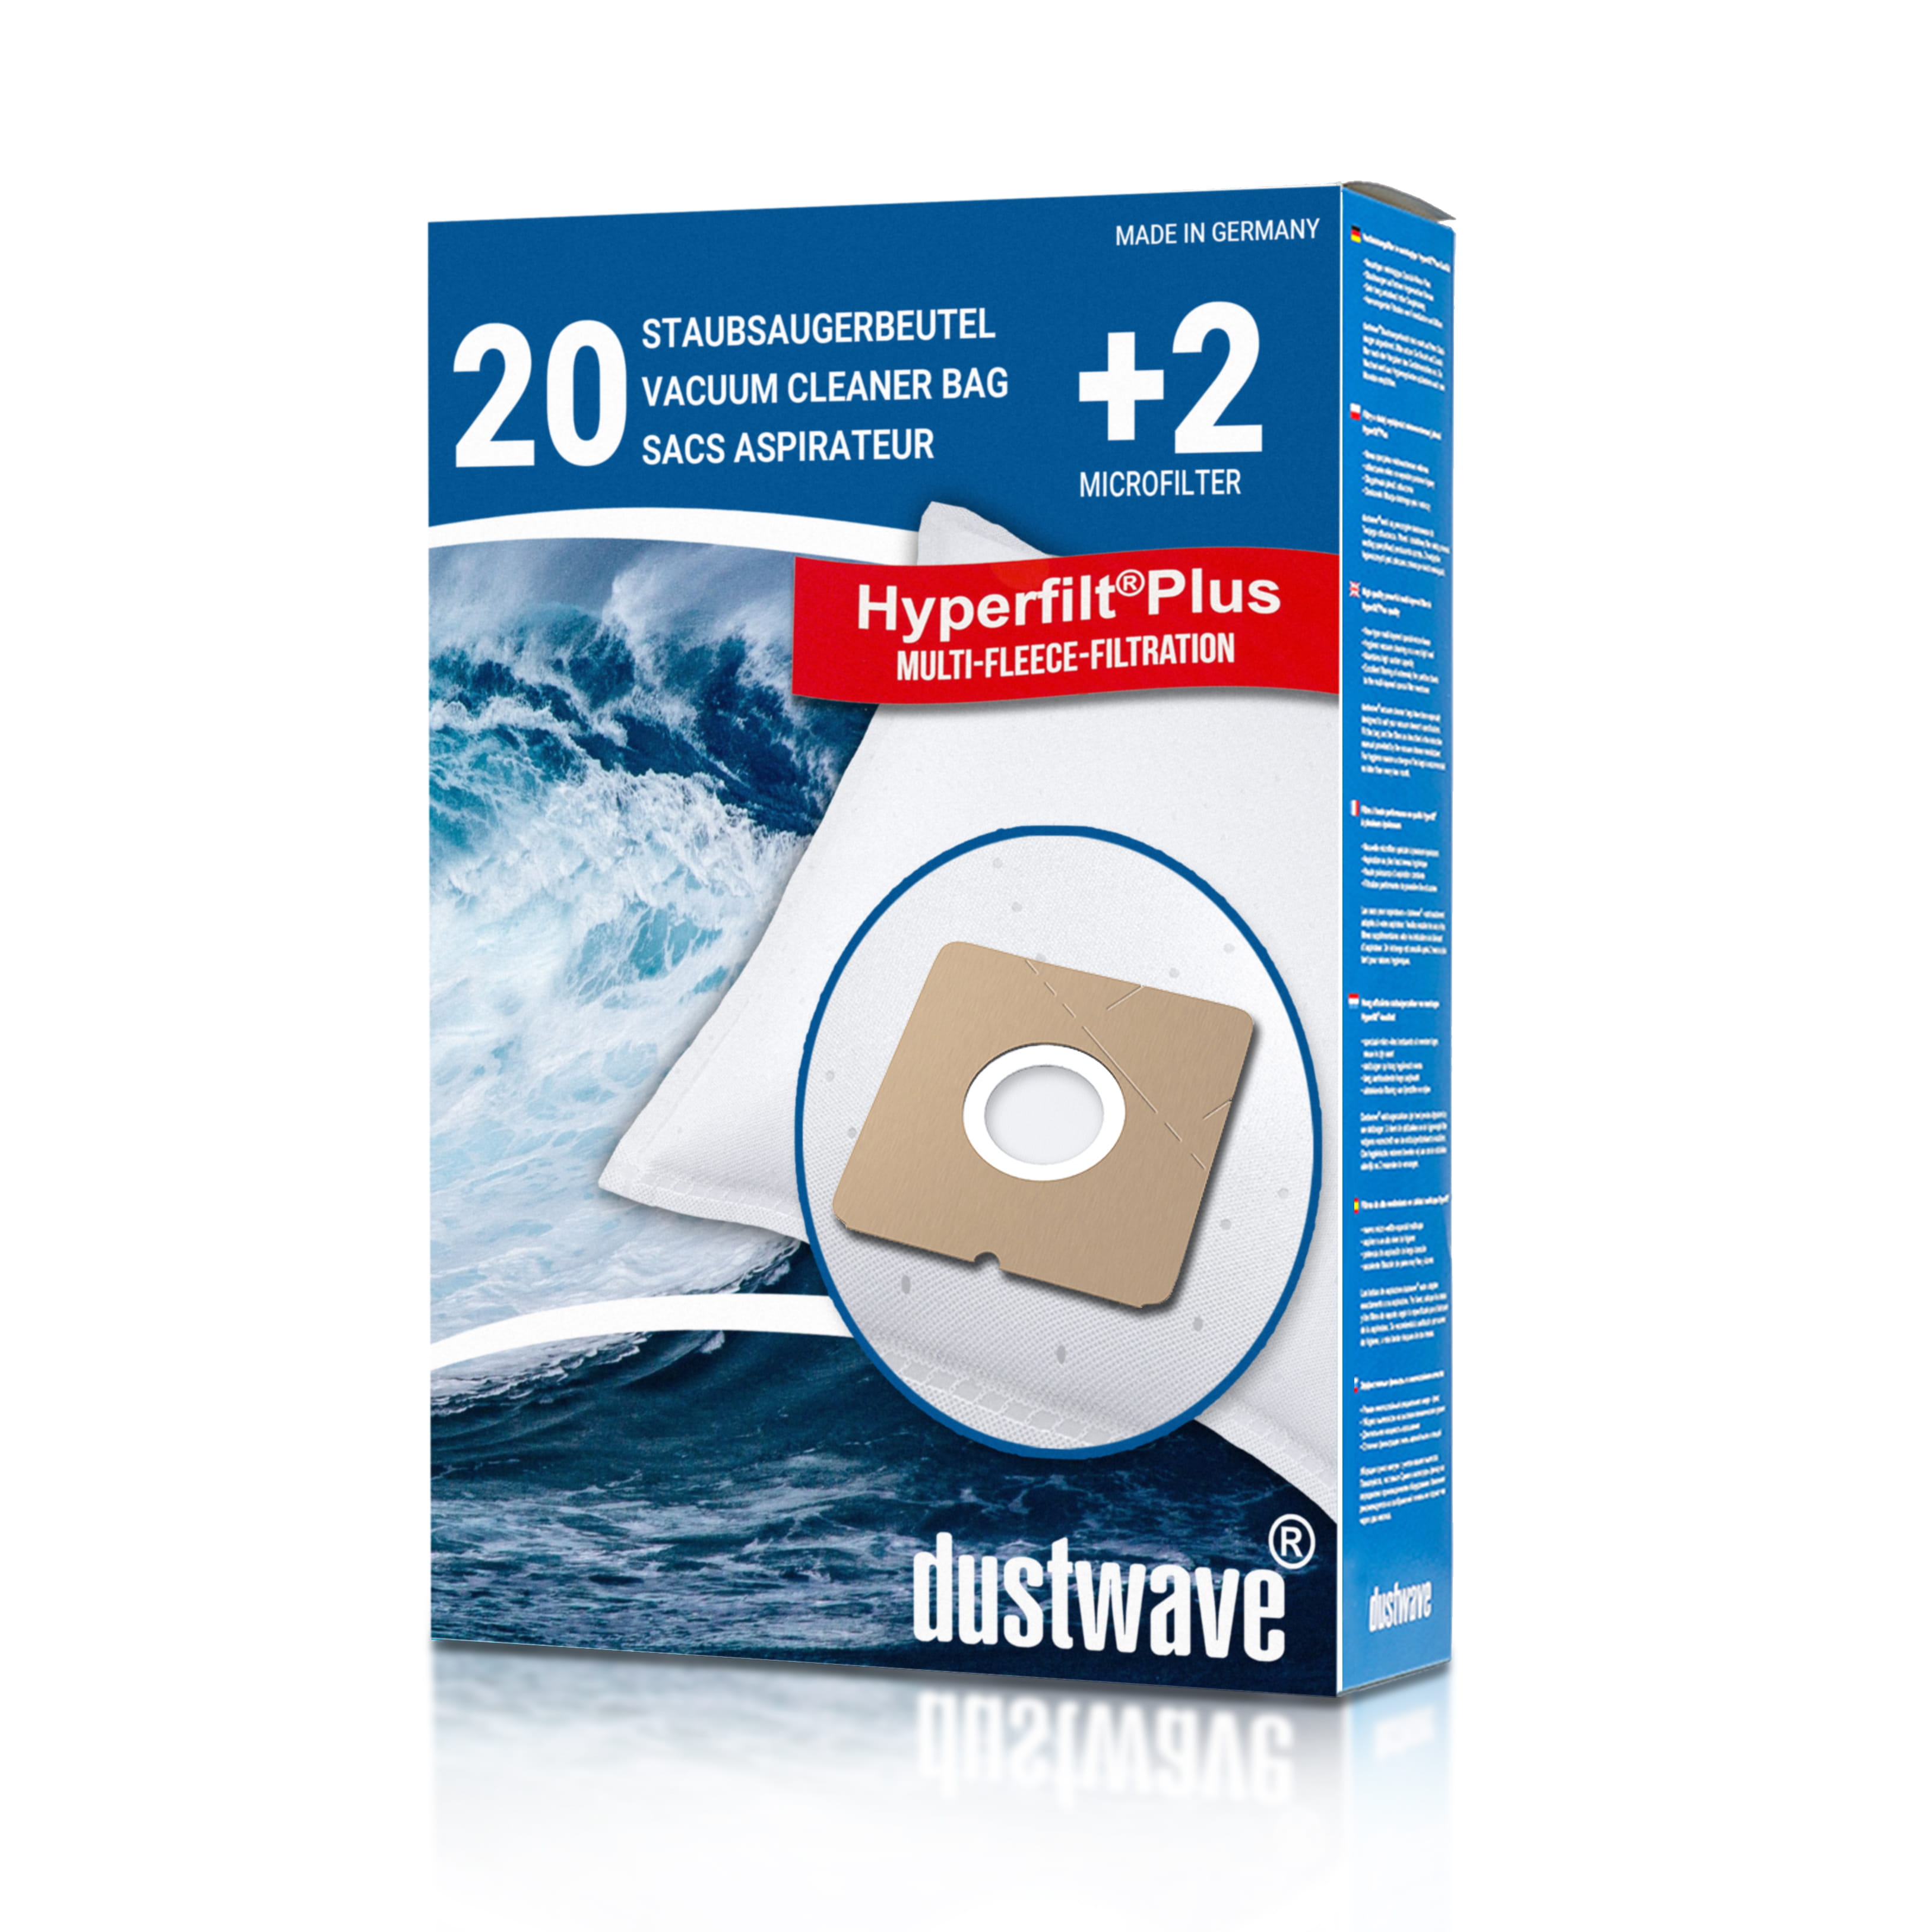 Dustwave® 20 Staubsaugerbeutel für Delta KS 1288 - hocheffizient, mehrlagiges Mikrovlies mit Hygieneverschluss - Made in Germany